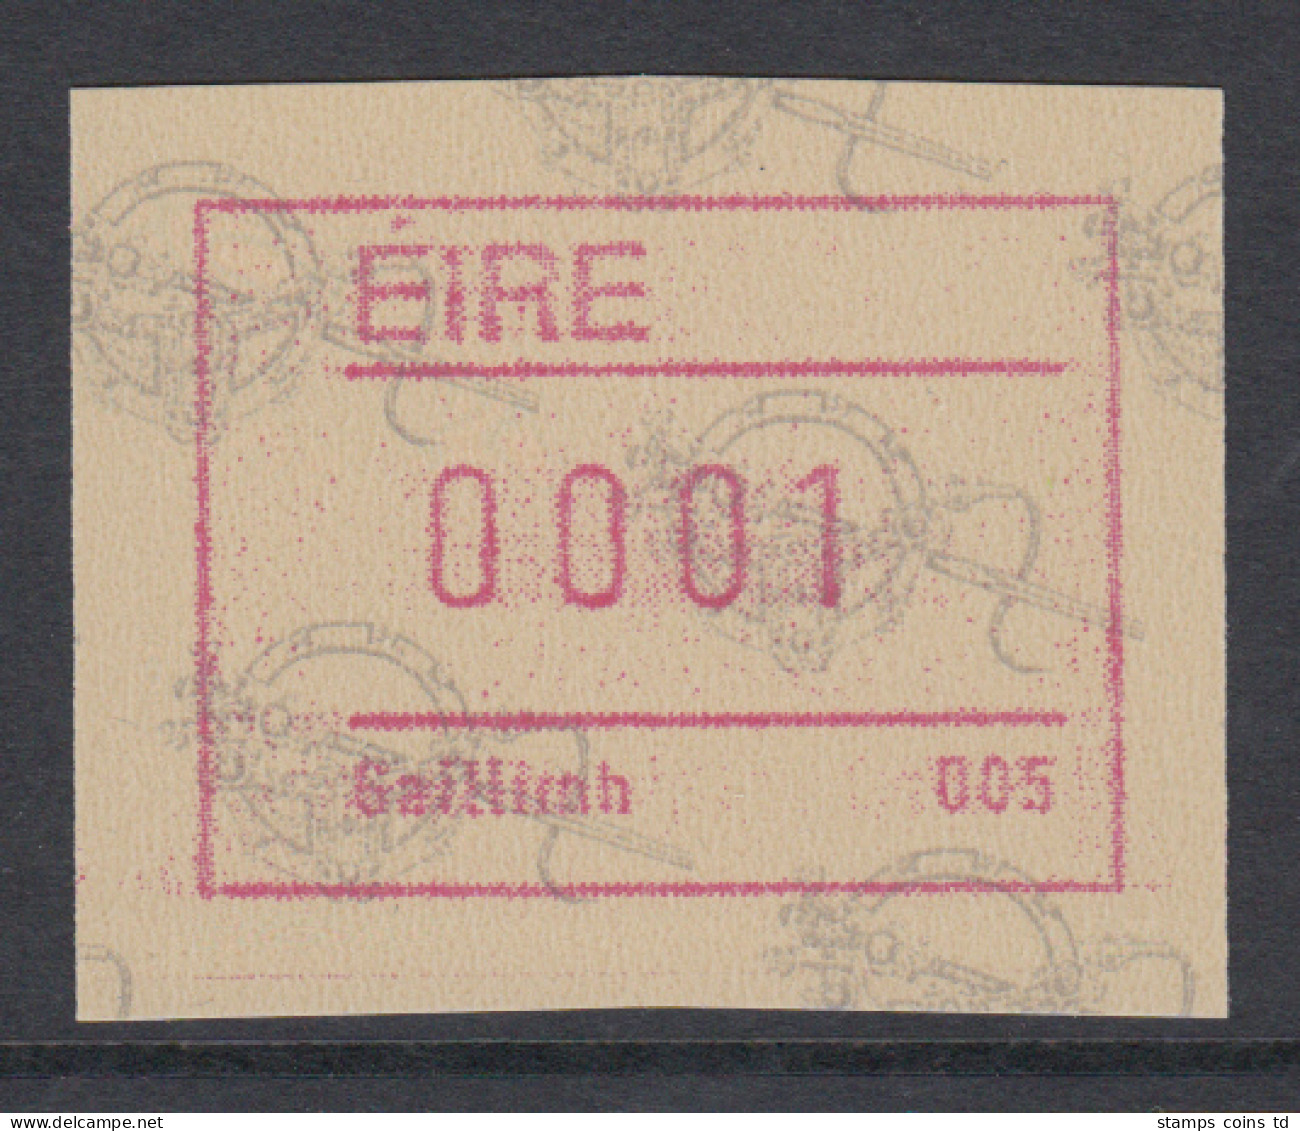 Irland Frama-ATM  2.Ausgabe 1992 Tara-Brosche,  Mi.-Nr. 4 **  - Frankeervignetten (Frama)